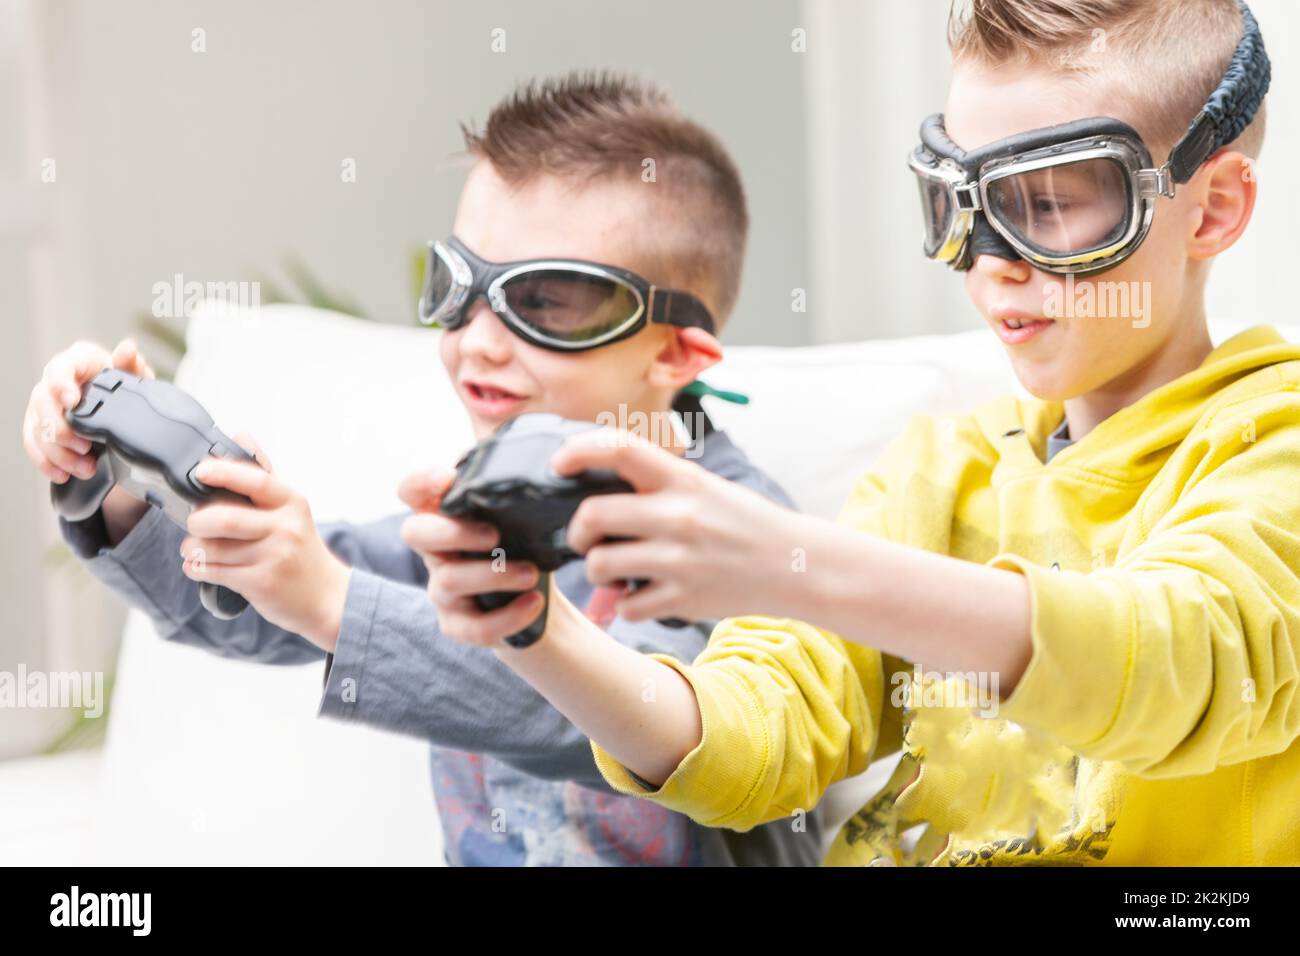 Dos muchachos competitivos jugando juegos de computadora Foto de stock